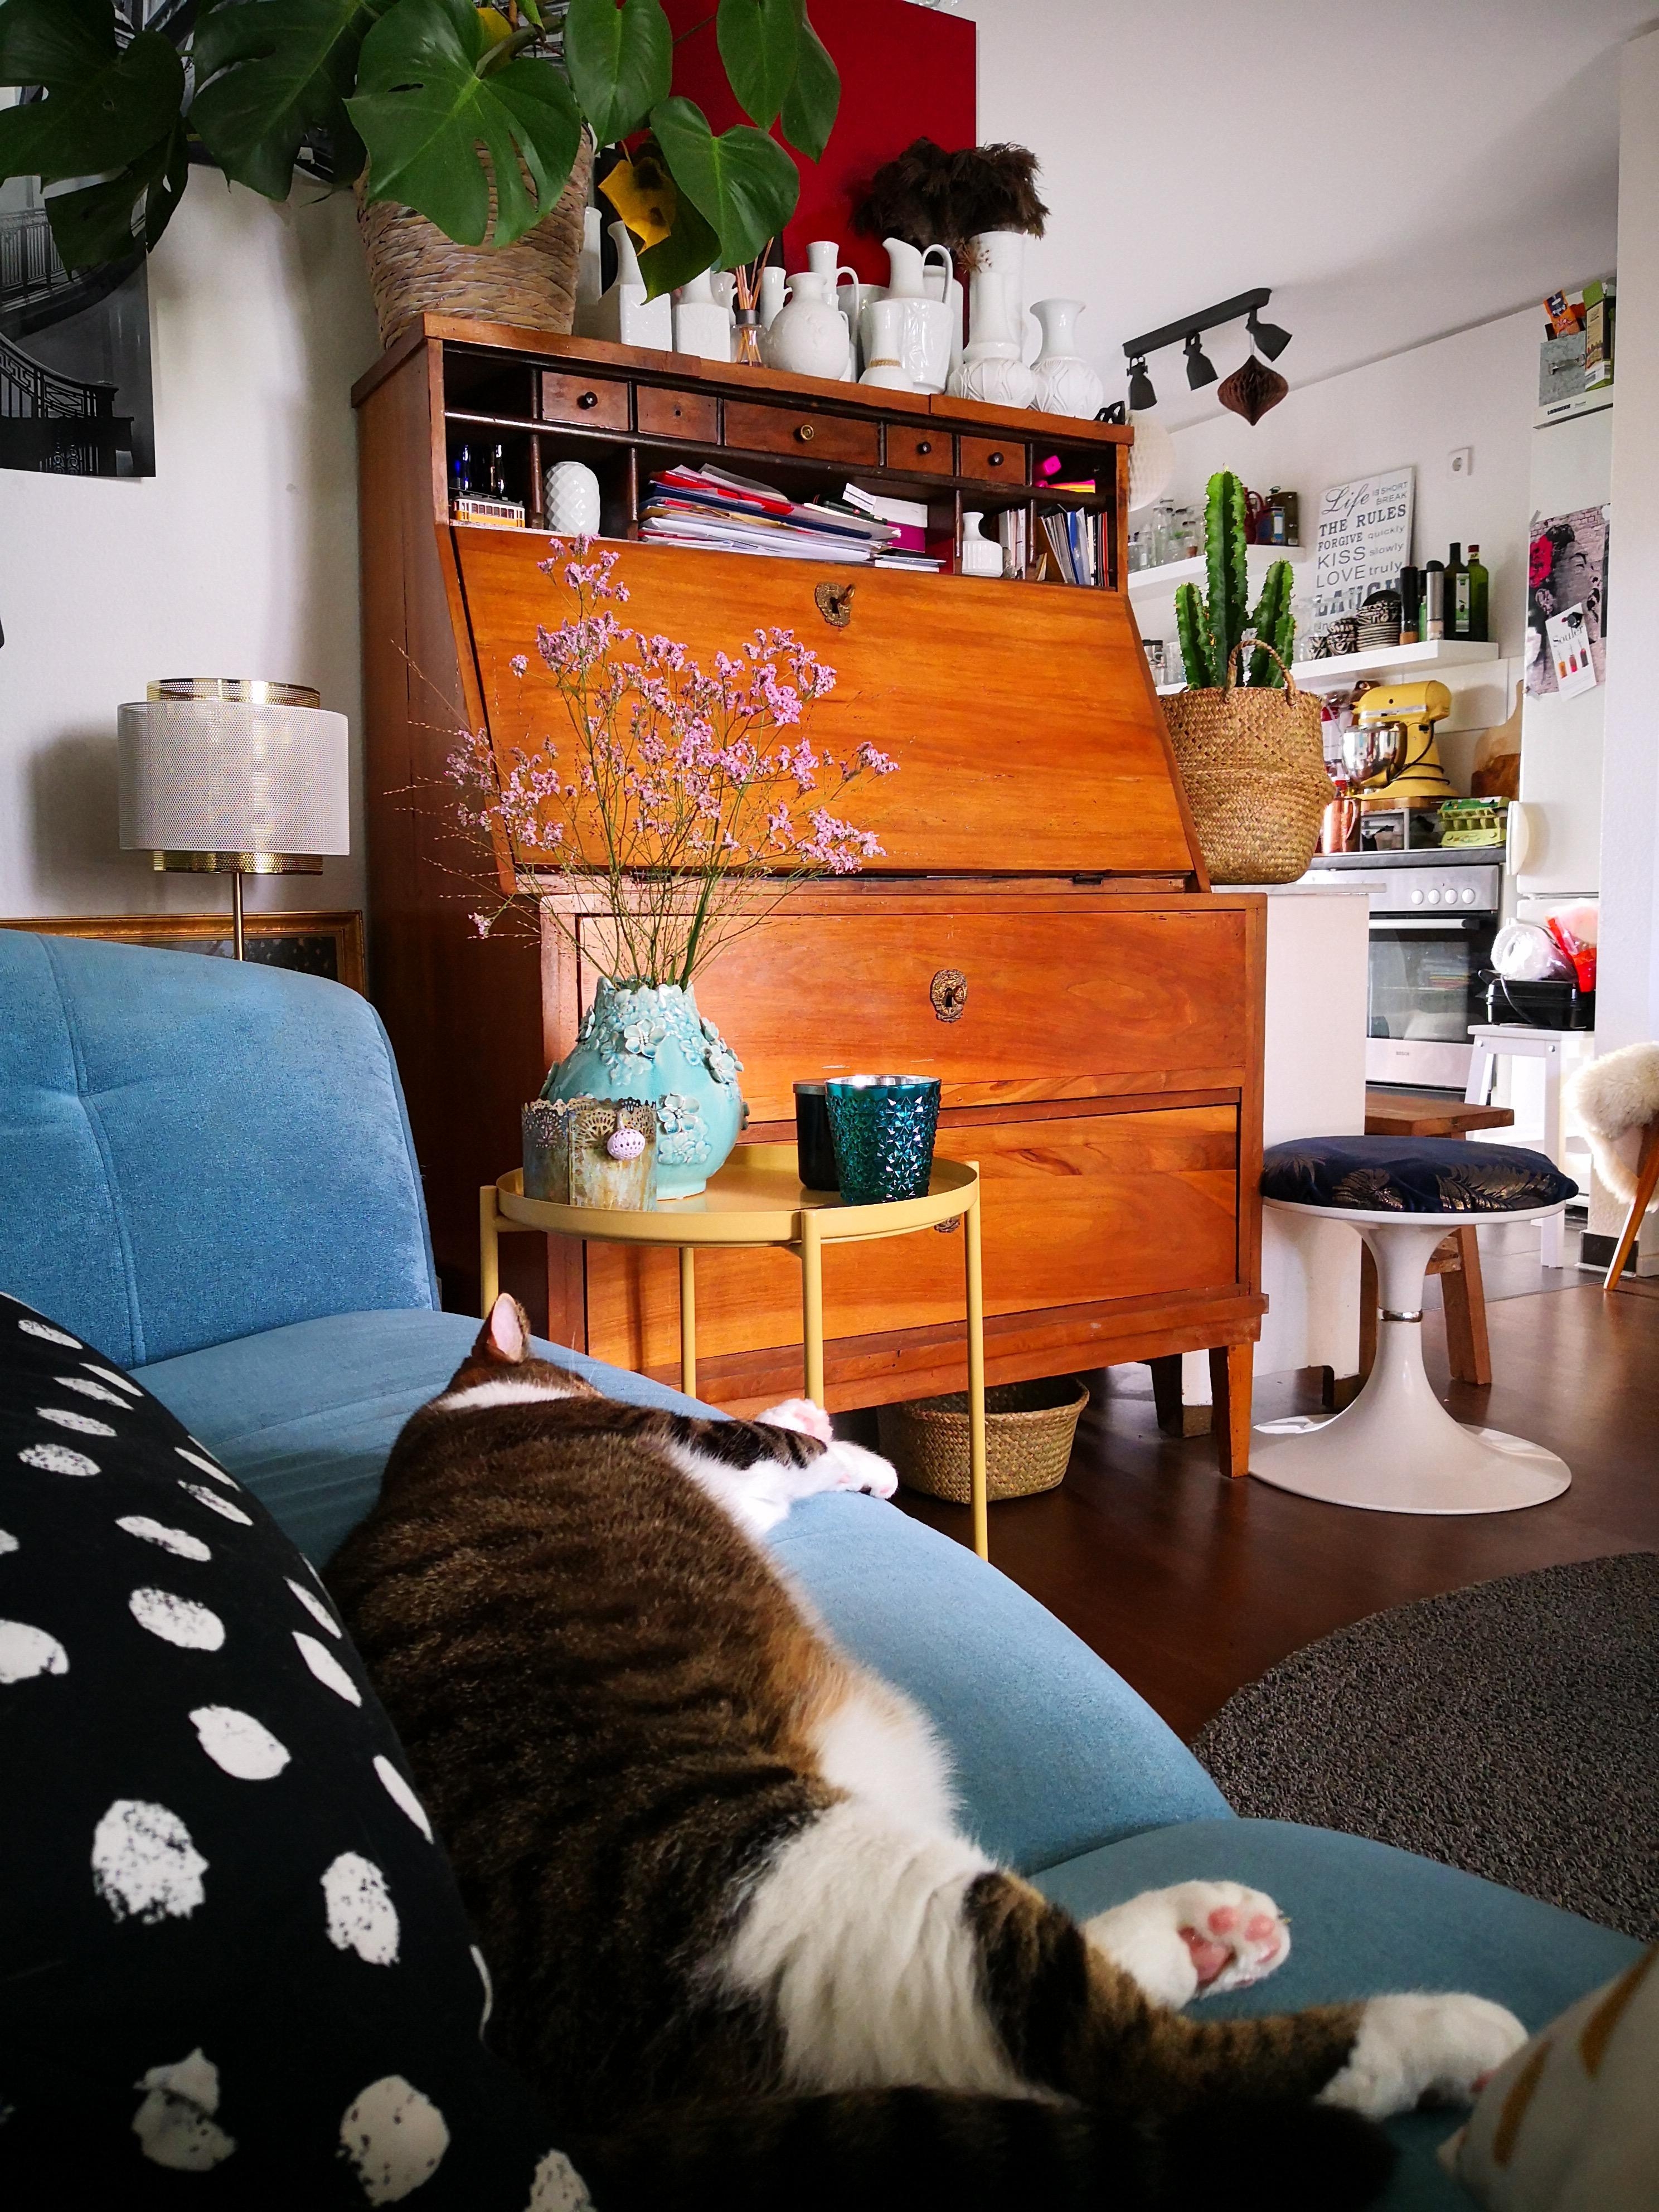 Der Kater hängt hier auf dem Sofa ab, 30 Grad sind Hugo zu warm #catcontent #livingroom #relax #crazycat #stylemix 